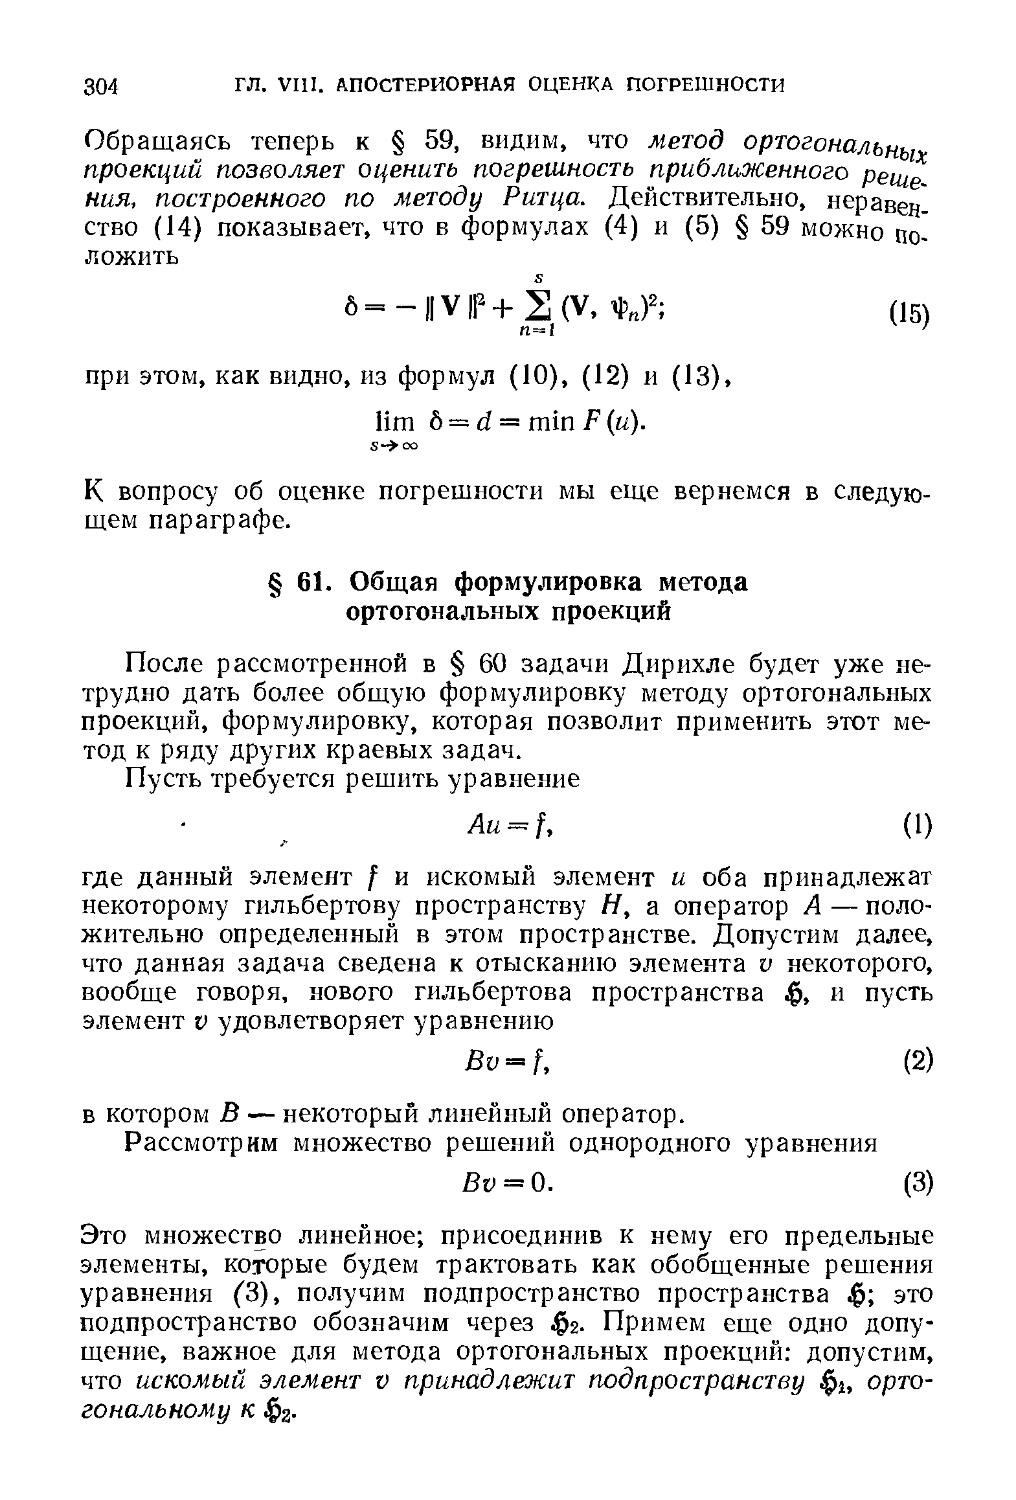 § 61. Общая формулировка метода ортогональных проекций